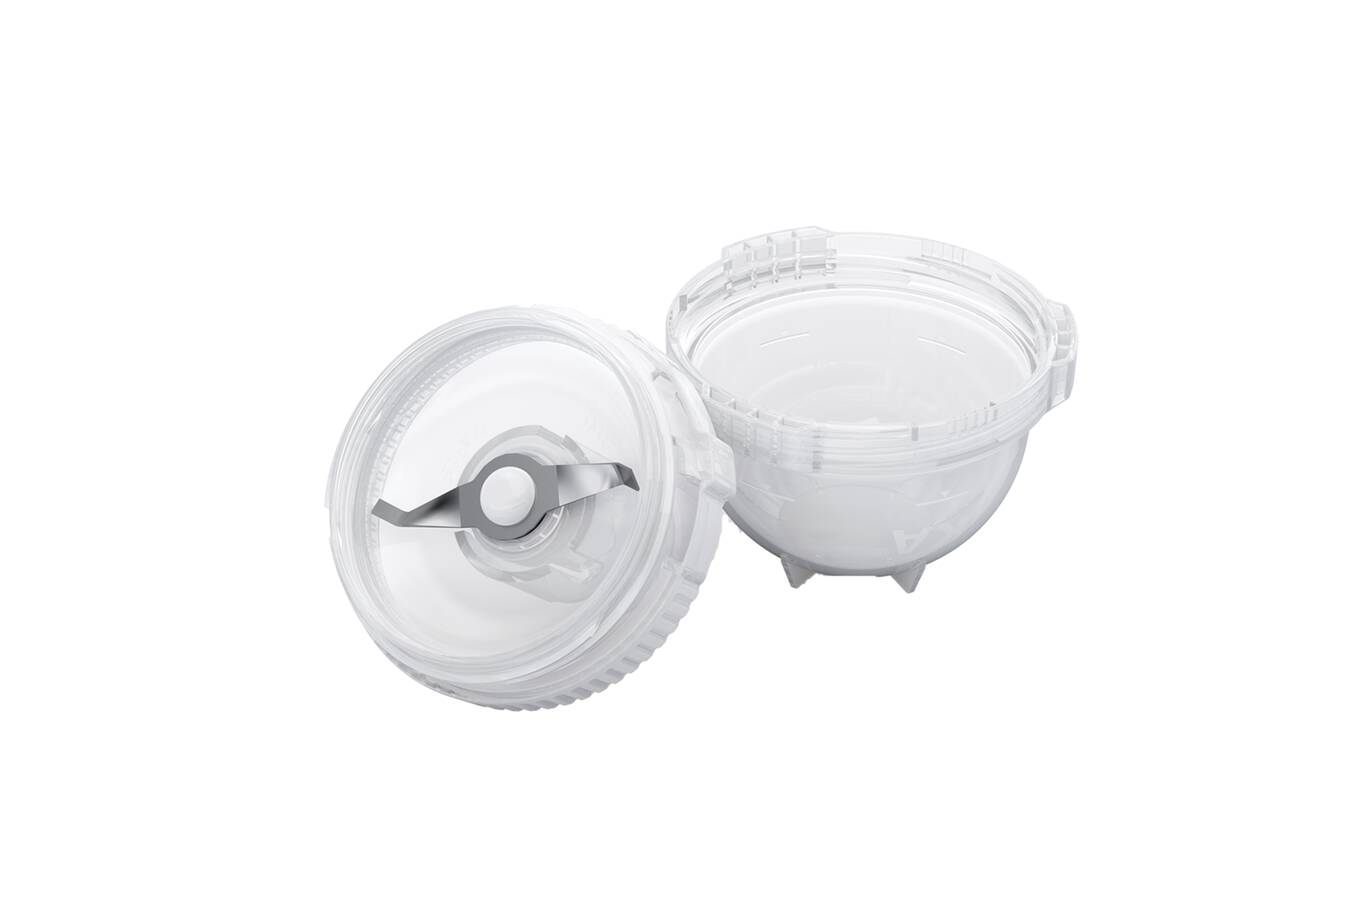 Single-Use-Mahlbehälter – der sichere Schutz gegen Kreuzkontaminationen, die Reinigung entfällt und die Probe kann in den Single-Use-Mahlbehältern aufbewahrt werden